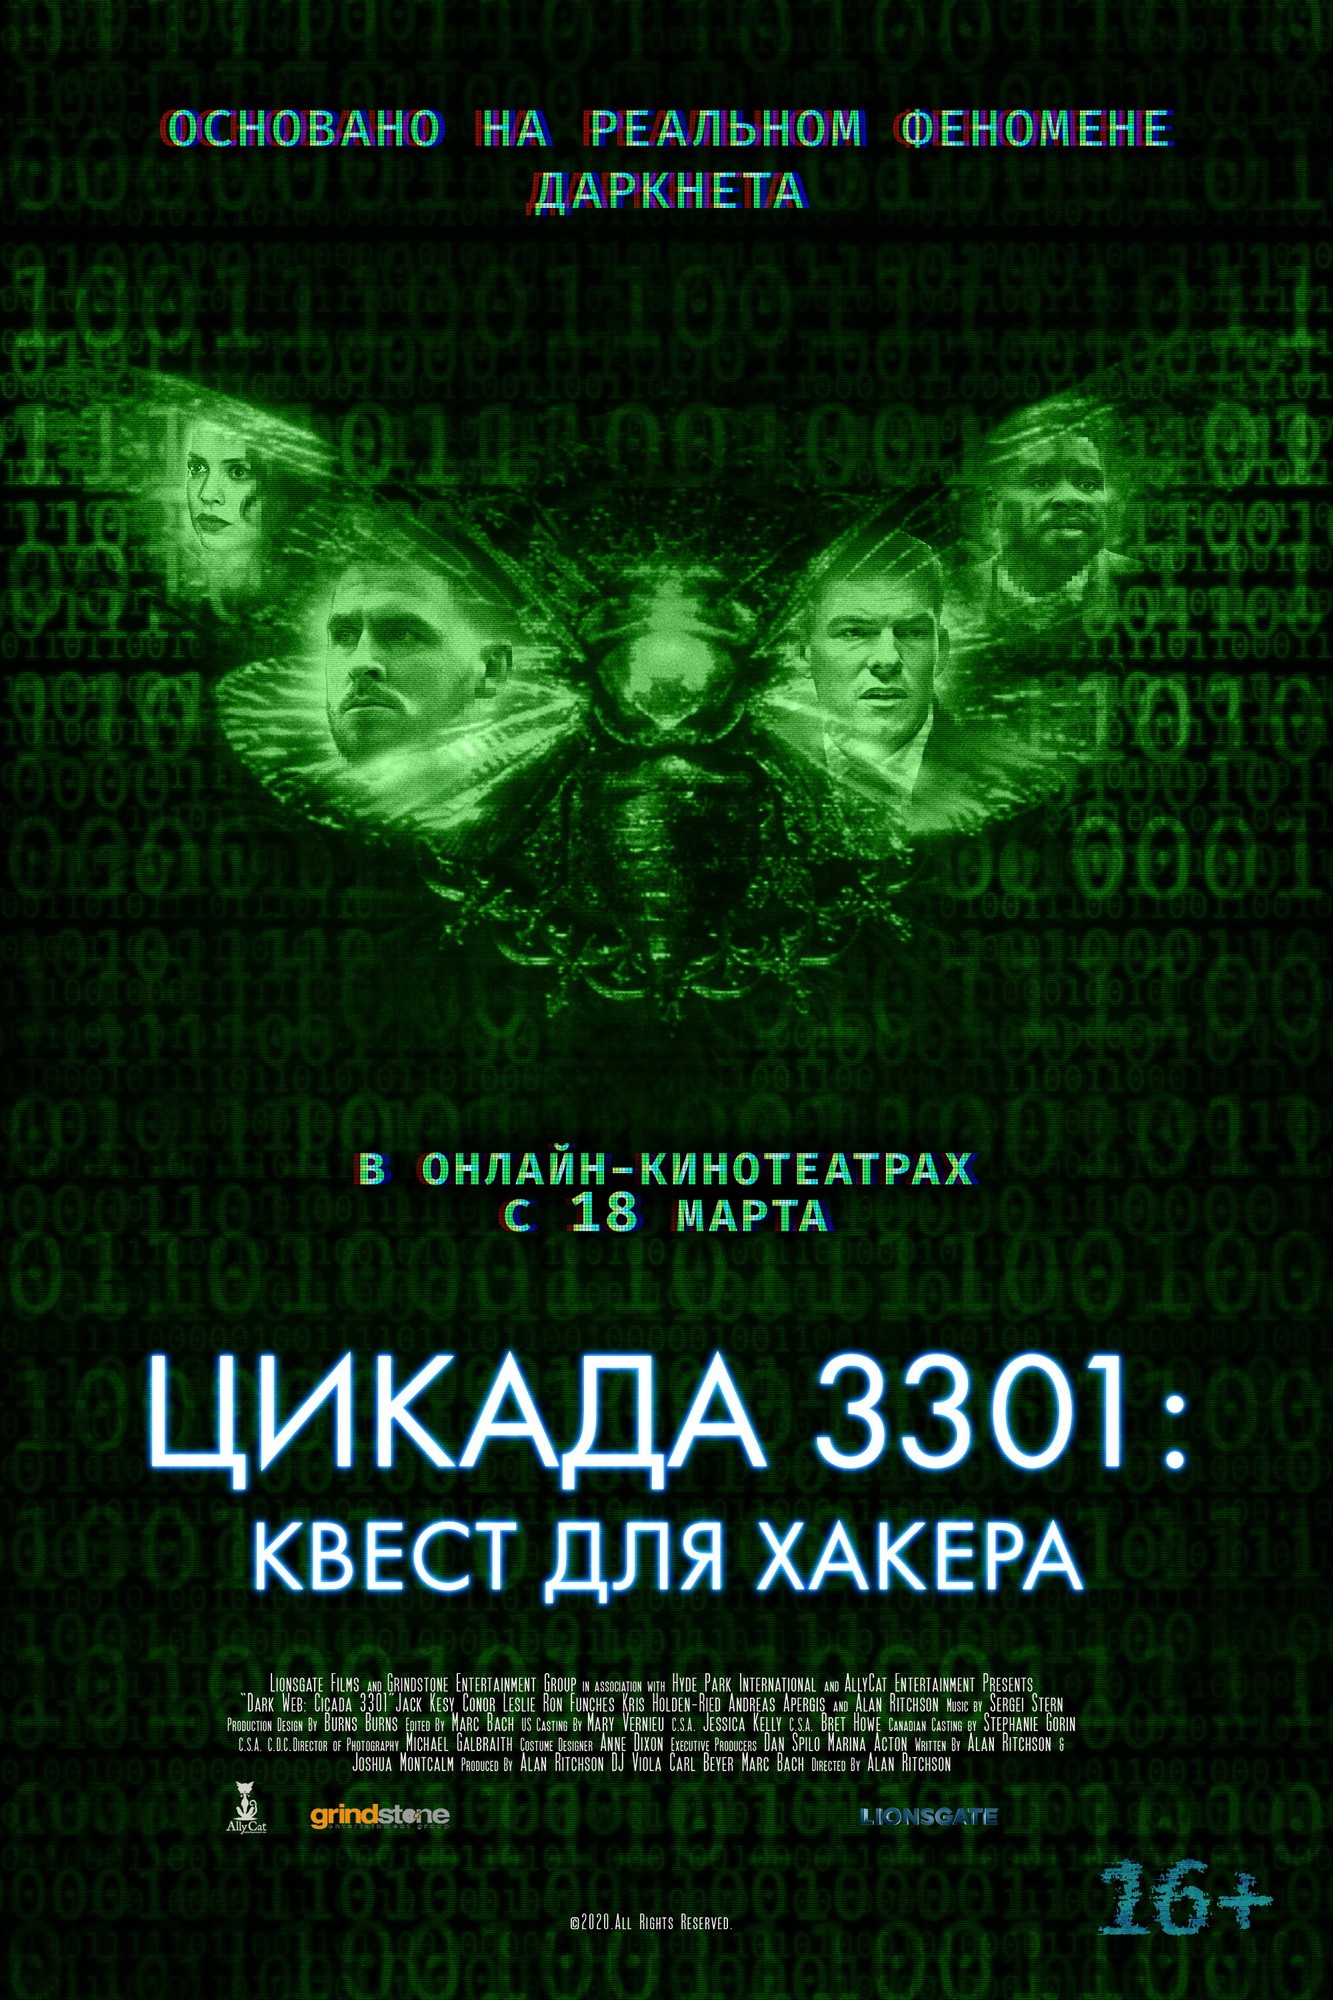 Цикада 3301: Квест для хакера: постер N182507